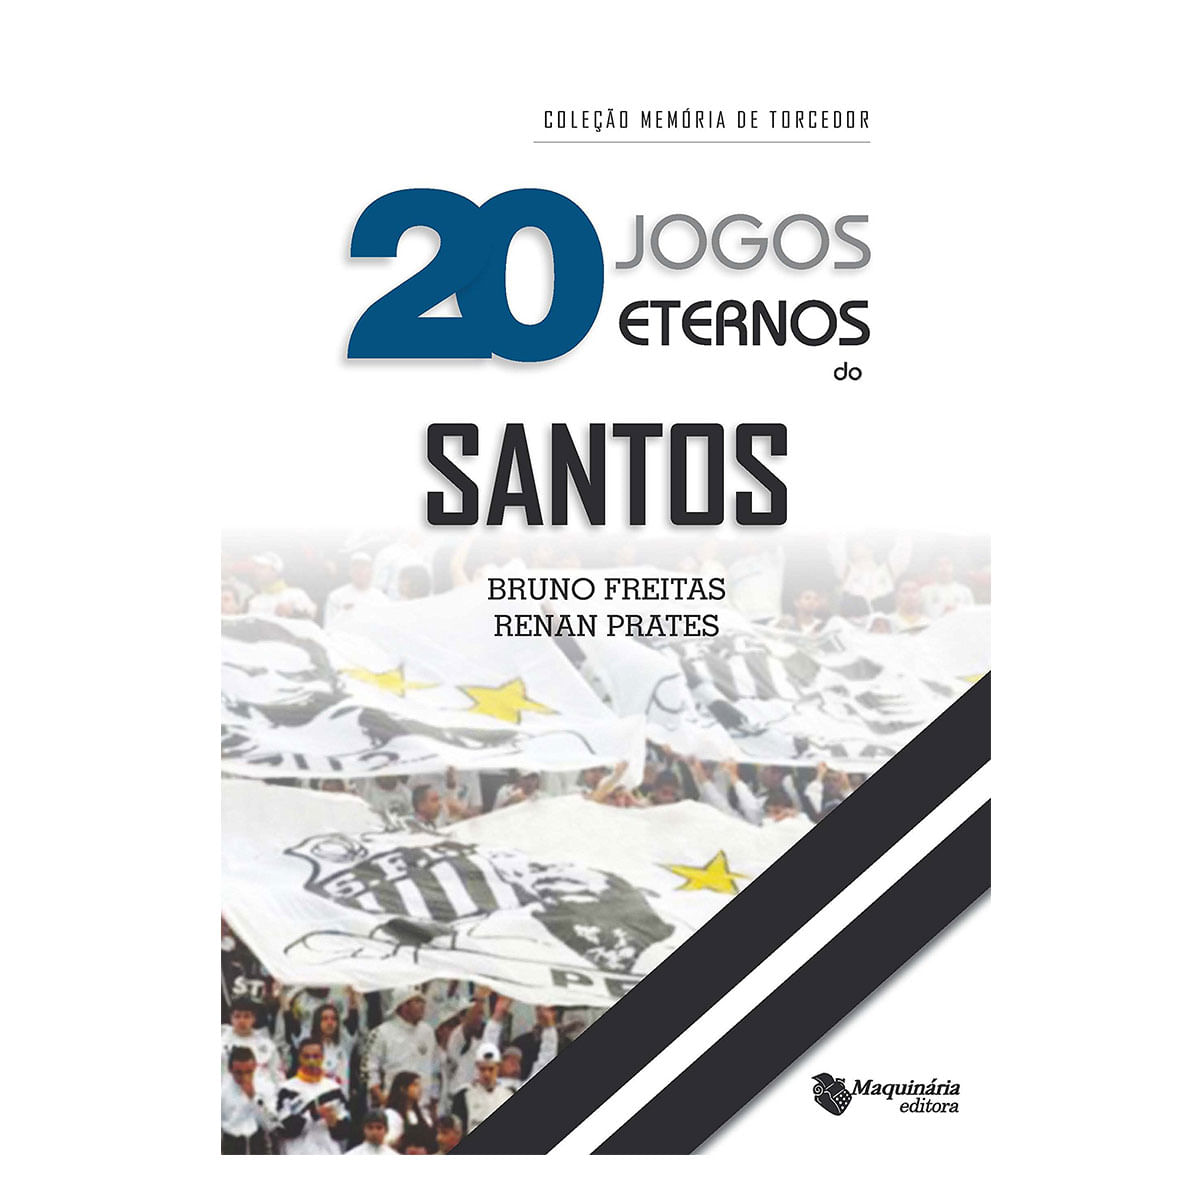 20 JOGOS ETERNOS DO SANTOS